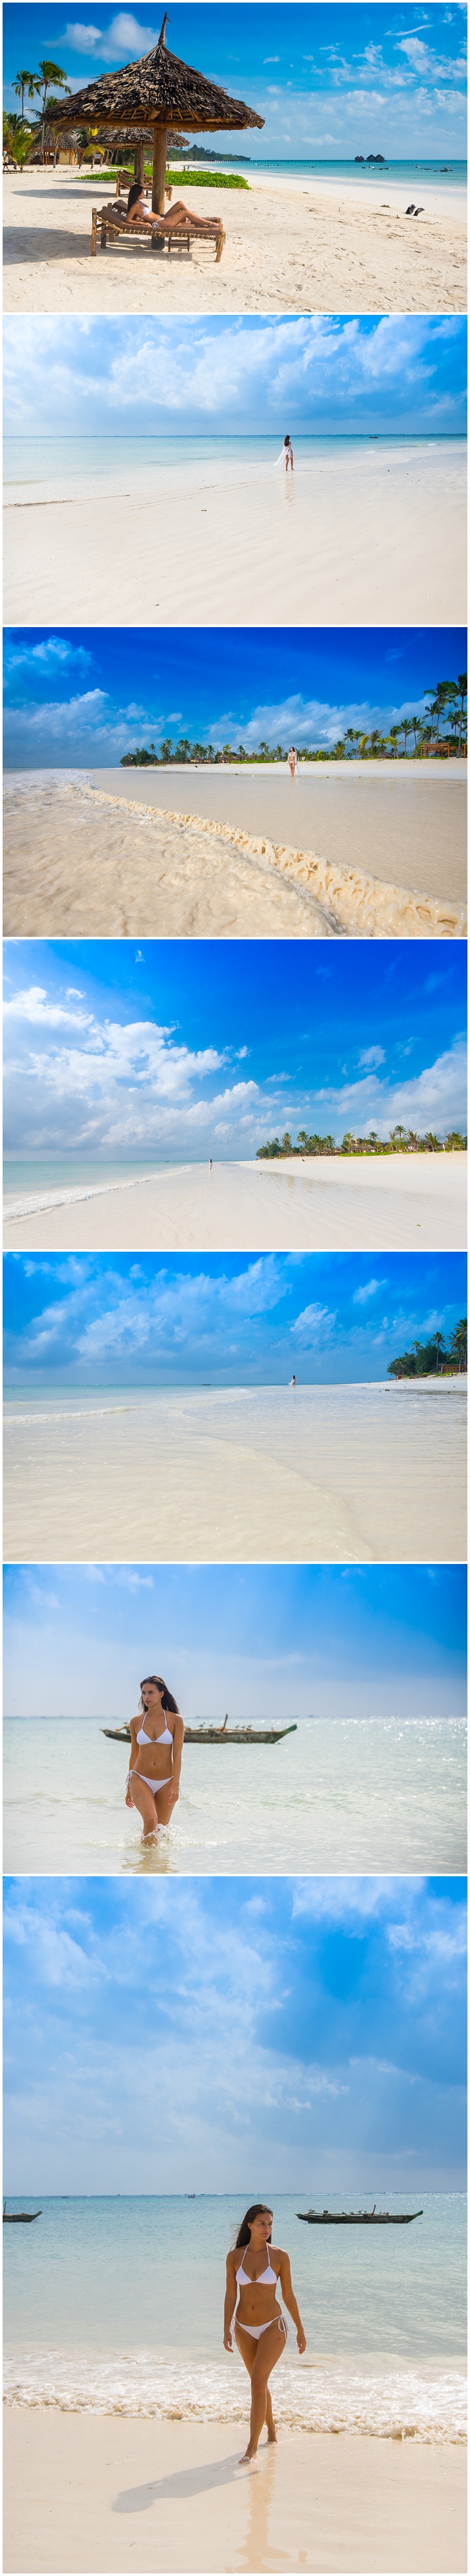 Beaches at Dongwe Zanzibar